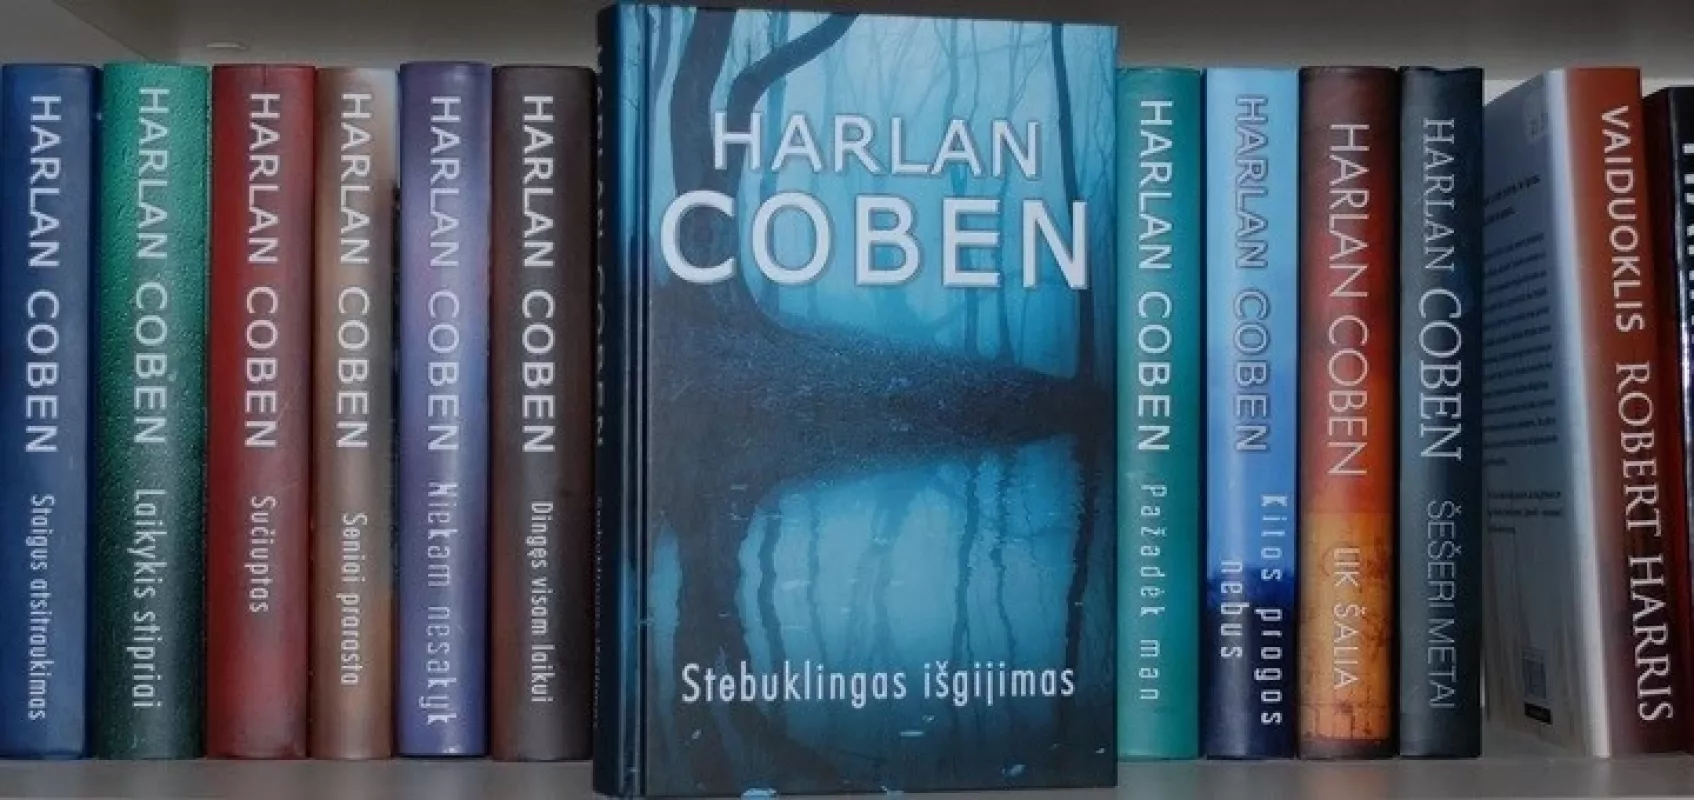 stebuklingas išgyjimas - Harlan Coben, knyga